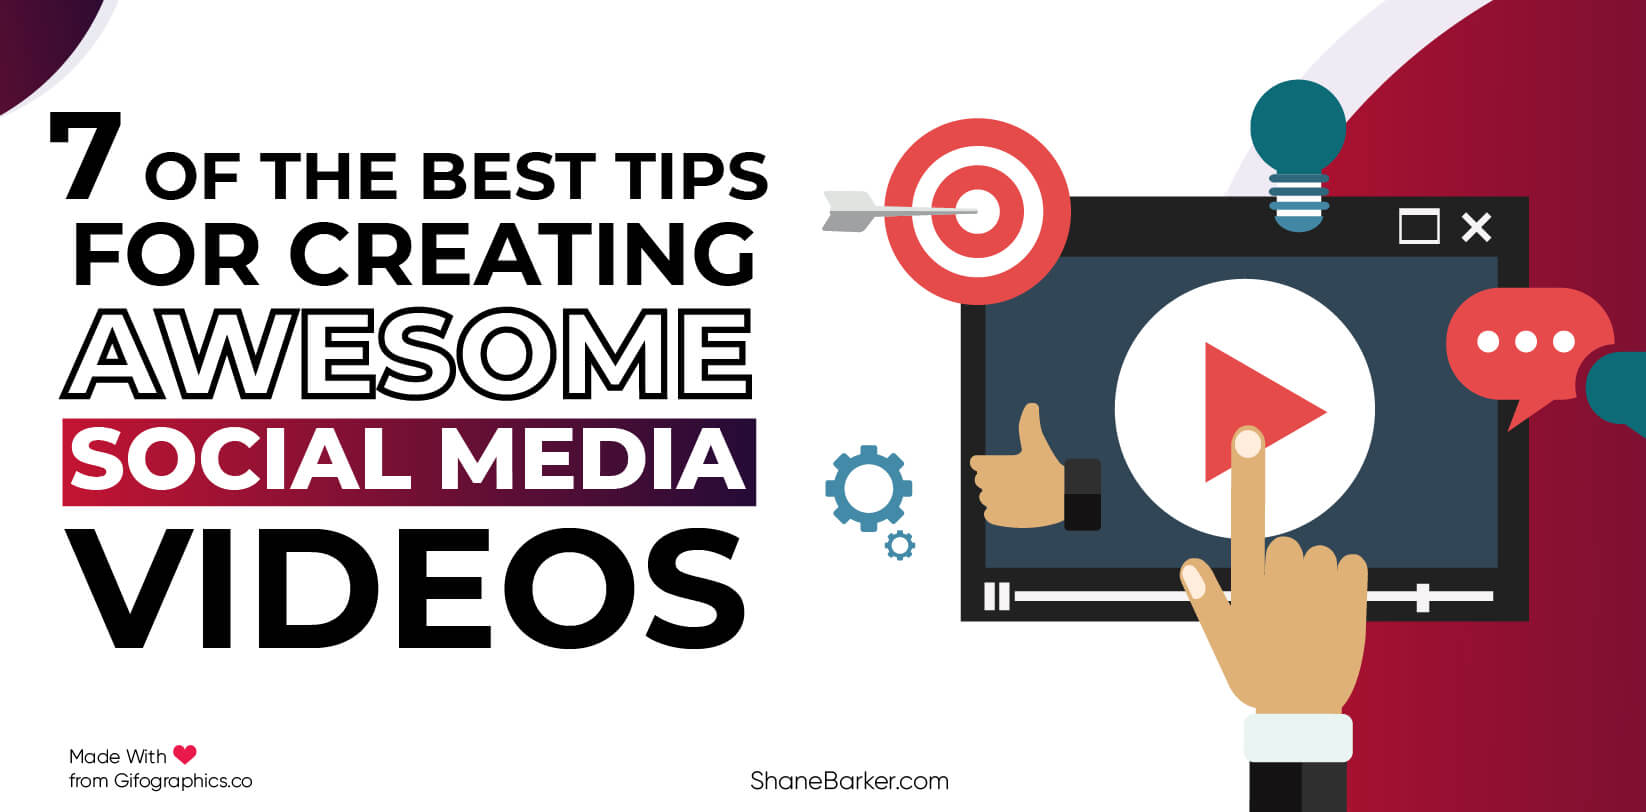 7 dei migliori consigli per creare fantastici video sui social media (aggiornato a settembre 2019)